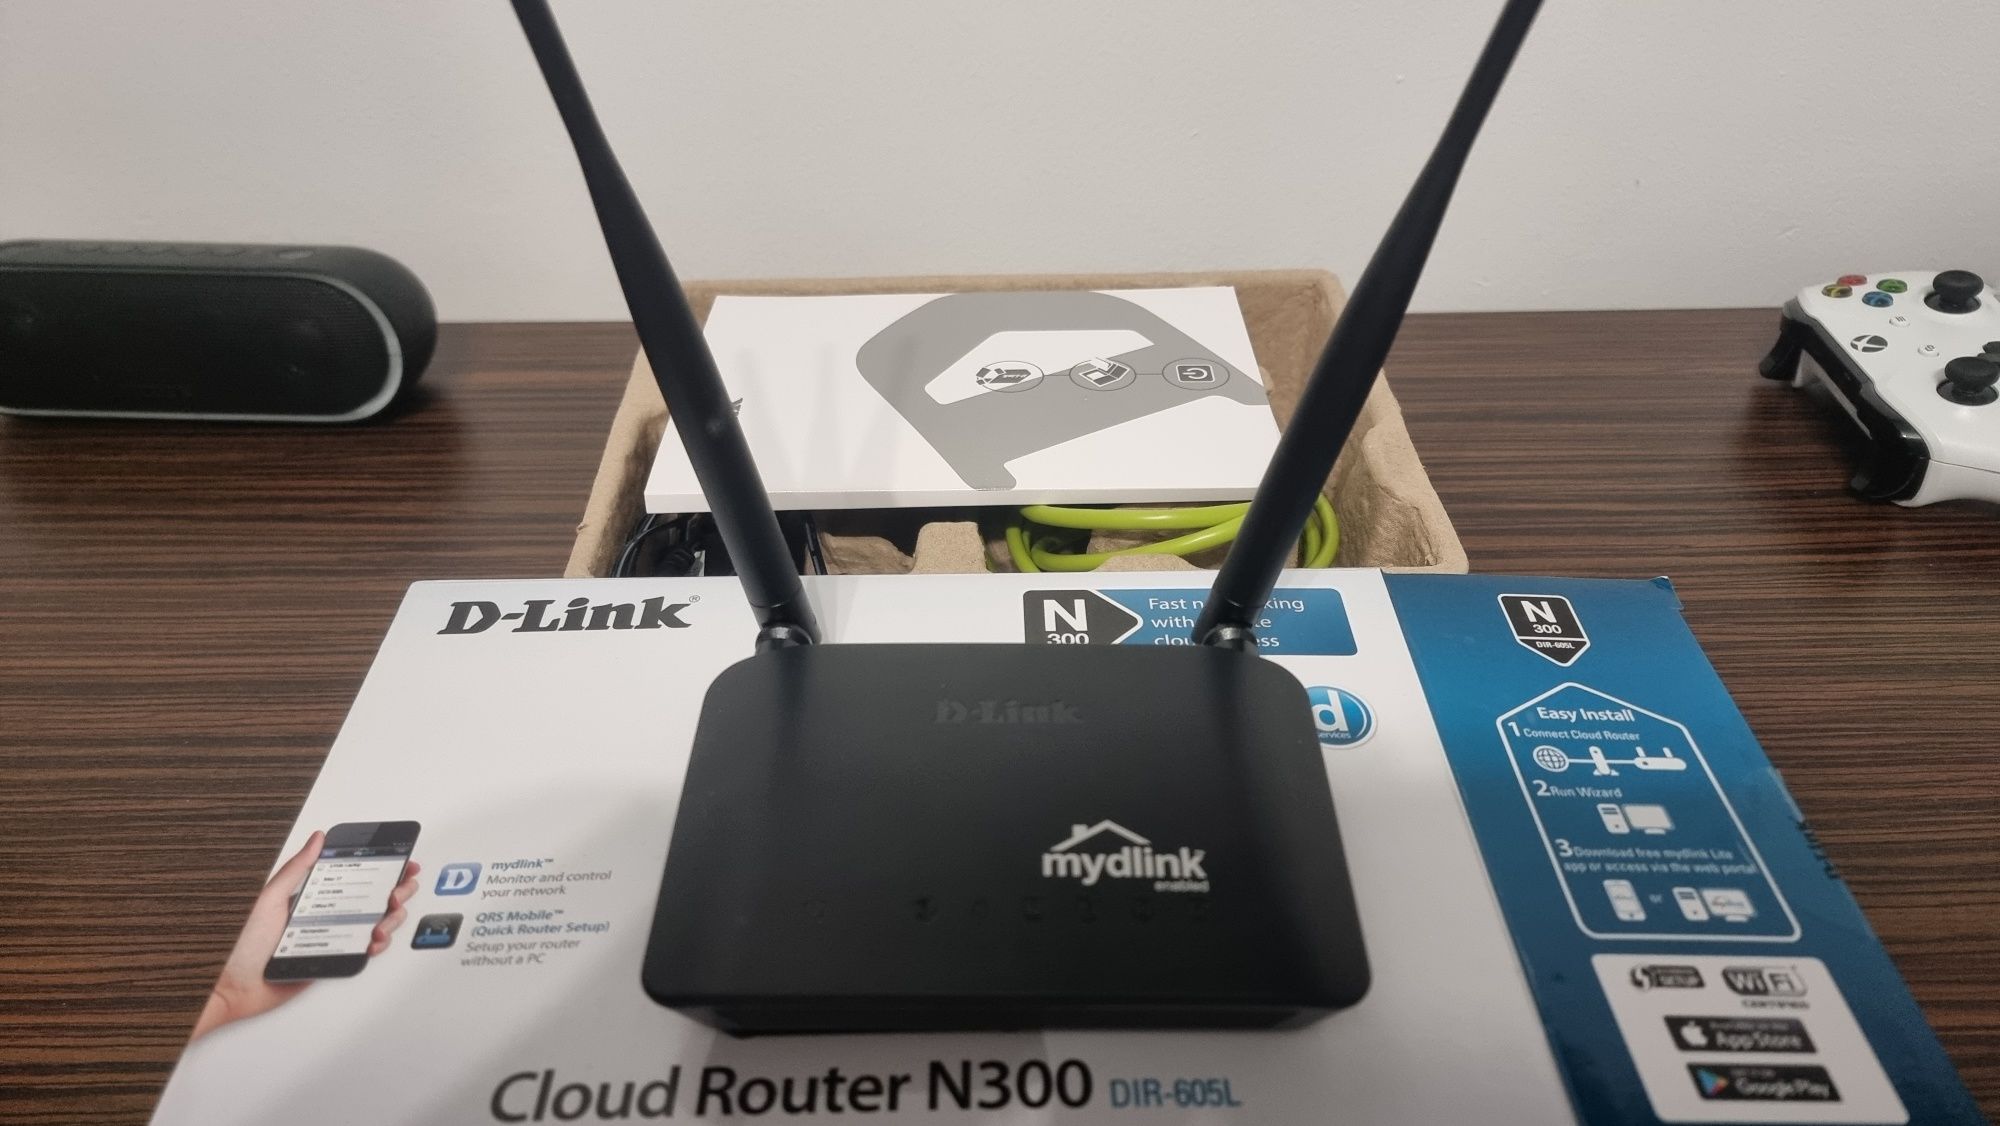 Router D-Link DIR-605L